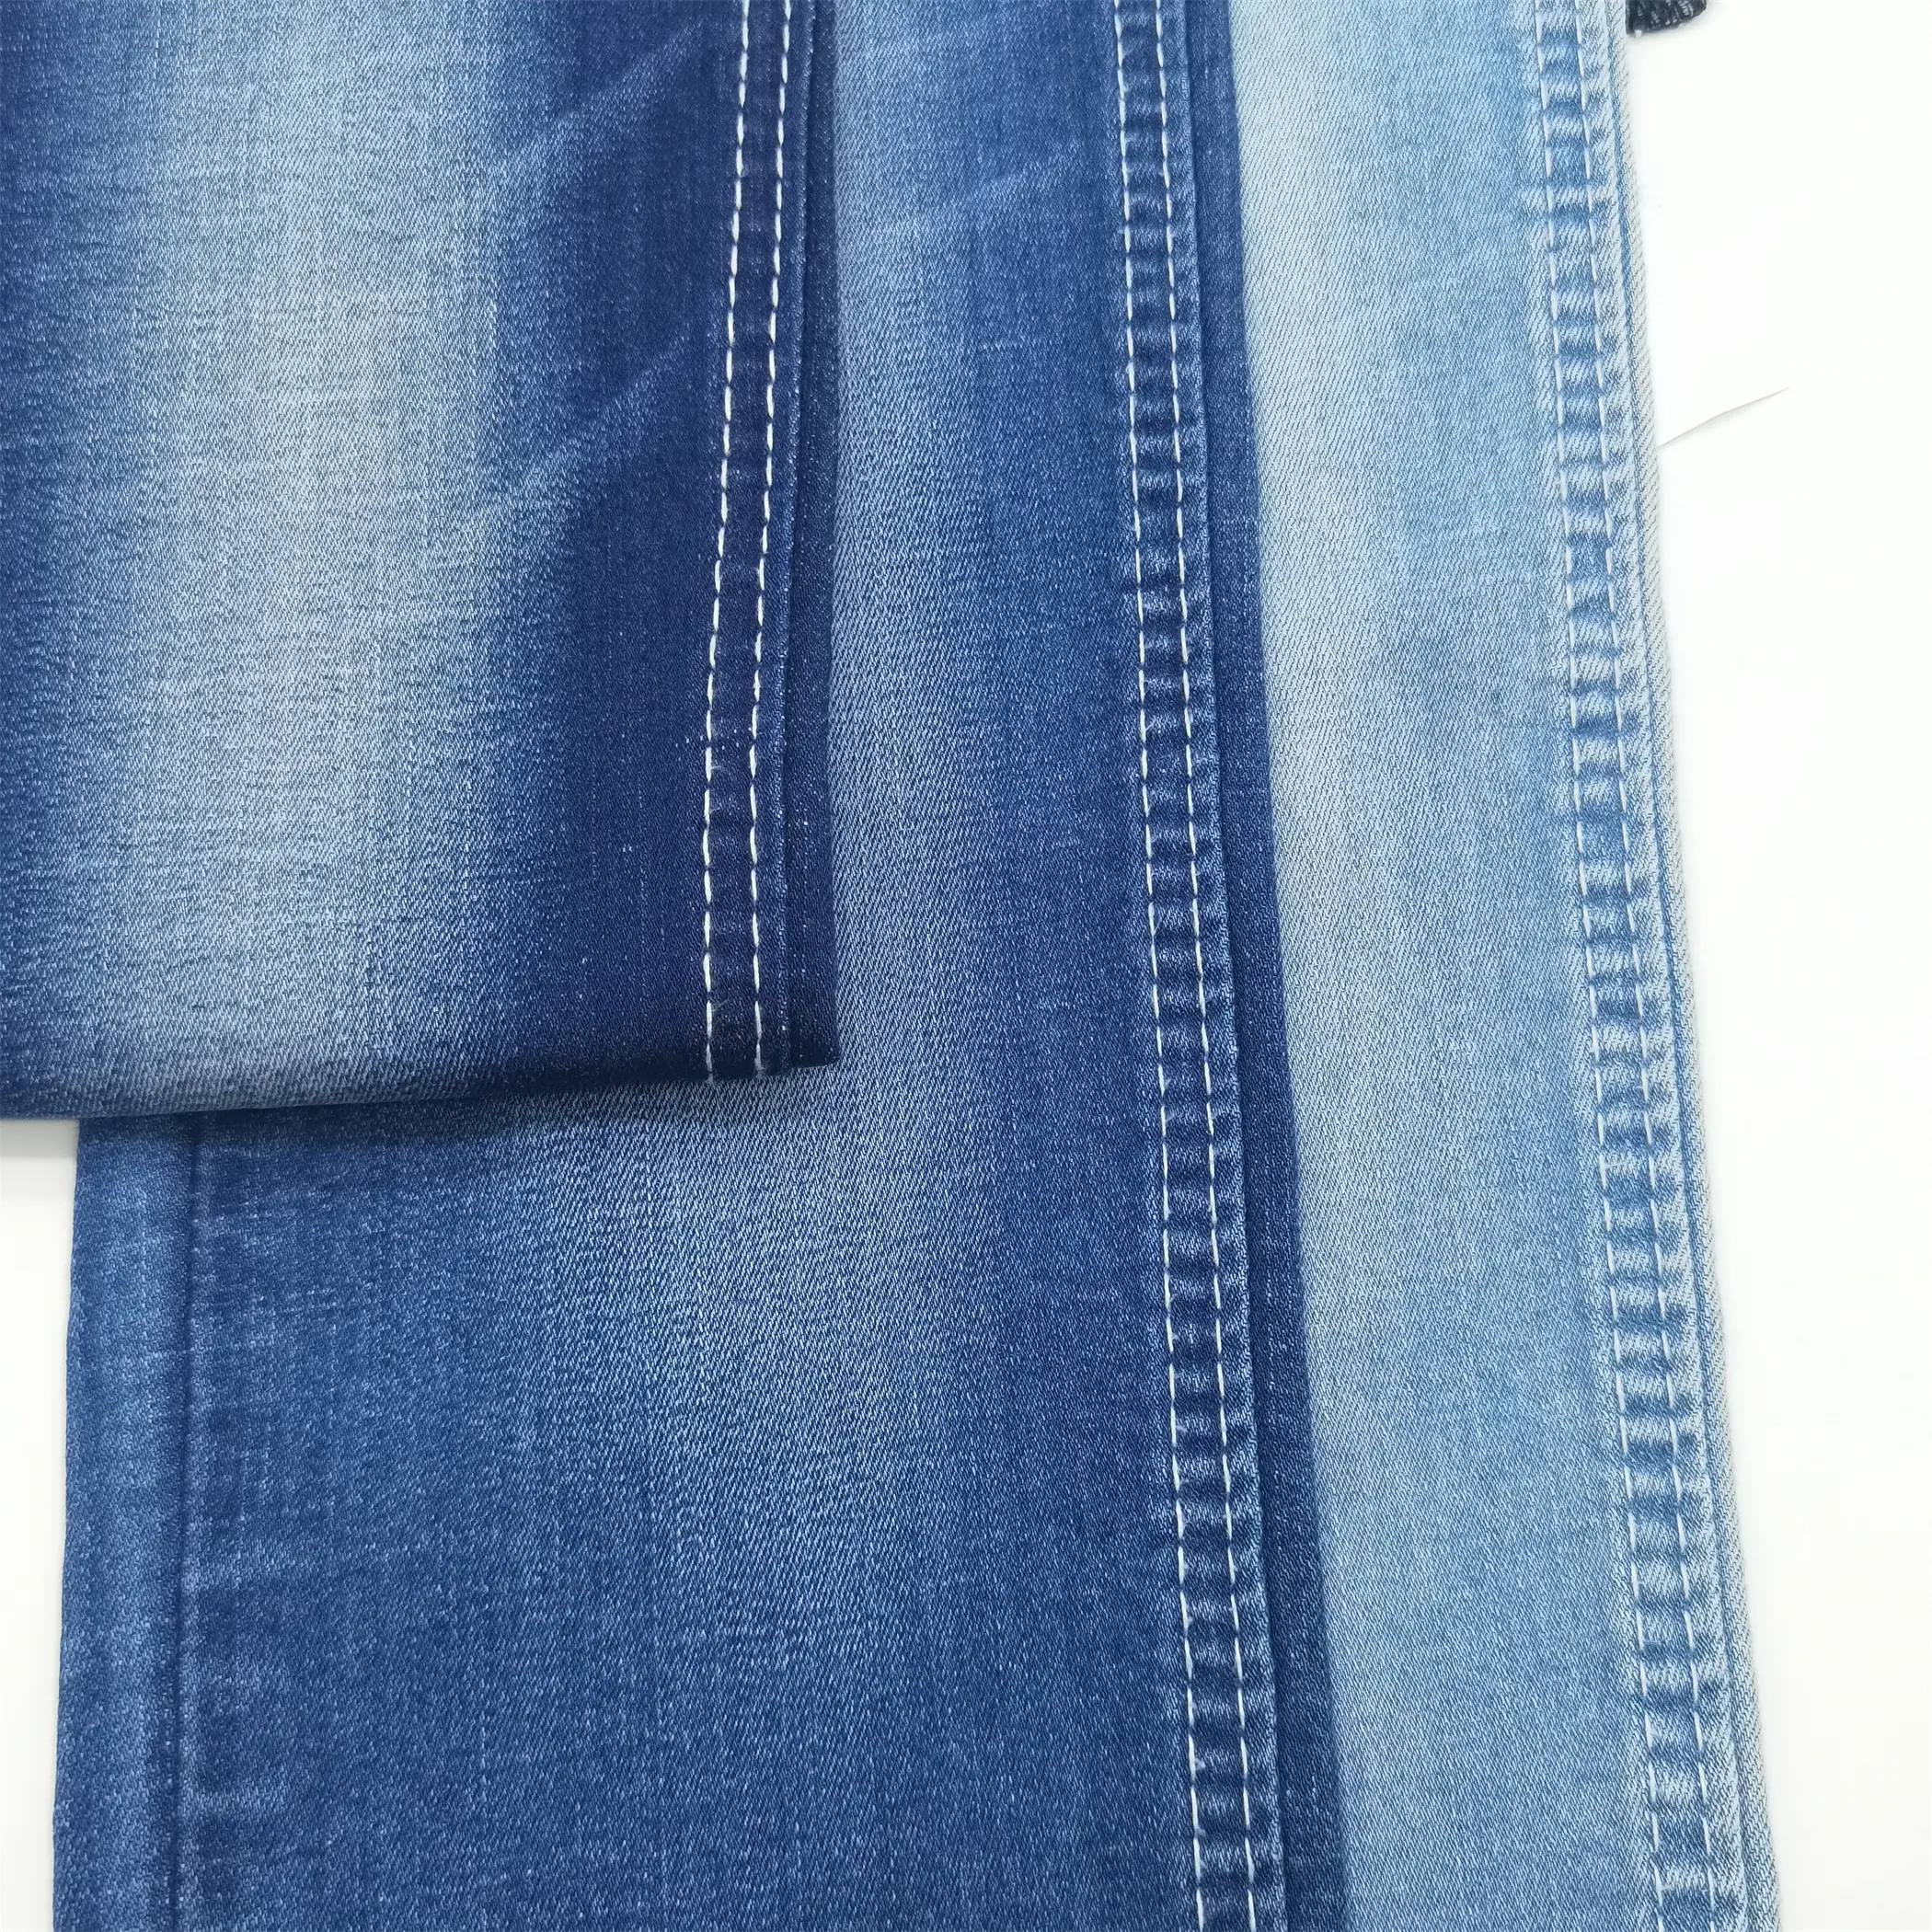 Soft sarja ceia elasticidade calça agradável forma aparecem tecido denim azul fino com qualidade superior